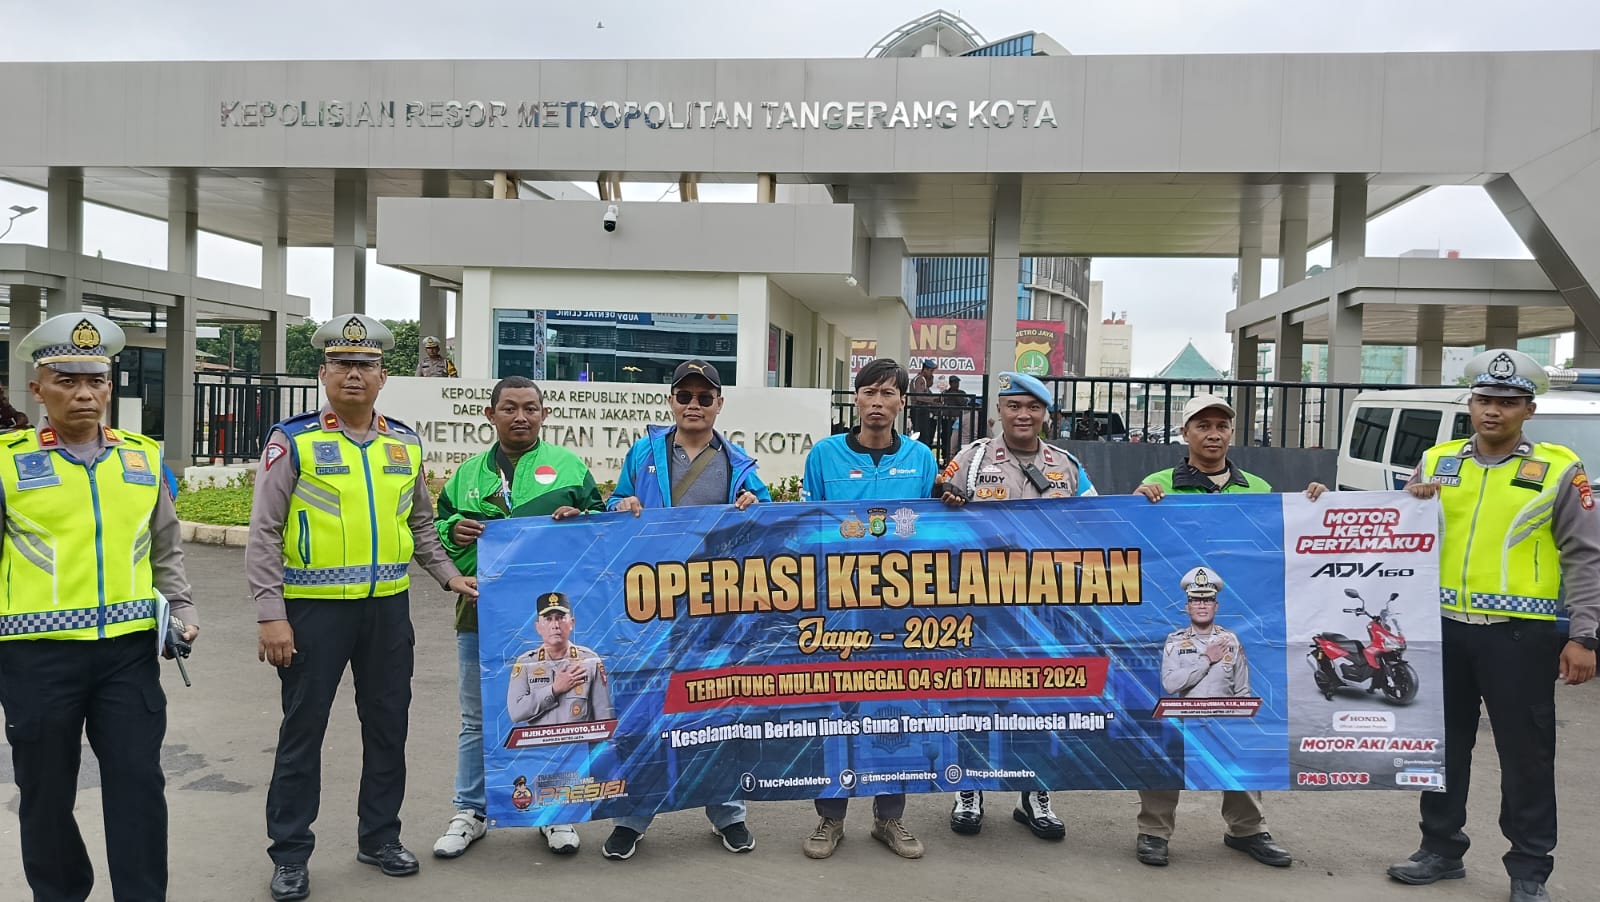 Siap-Siap! Polres Metro Tangerang Kota Akan Gelar Operasi Keselamatan Jaya 2024